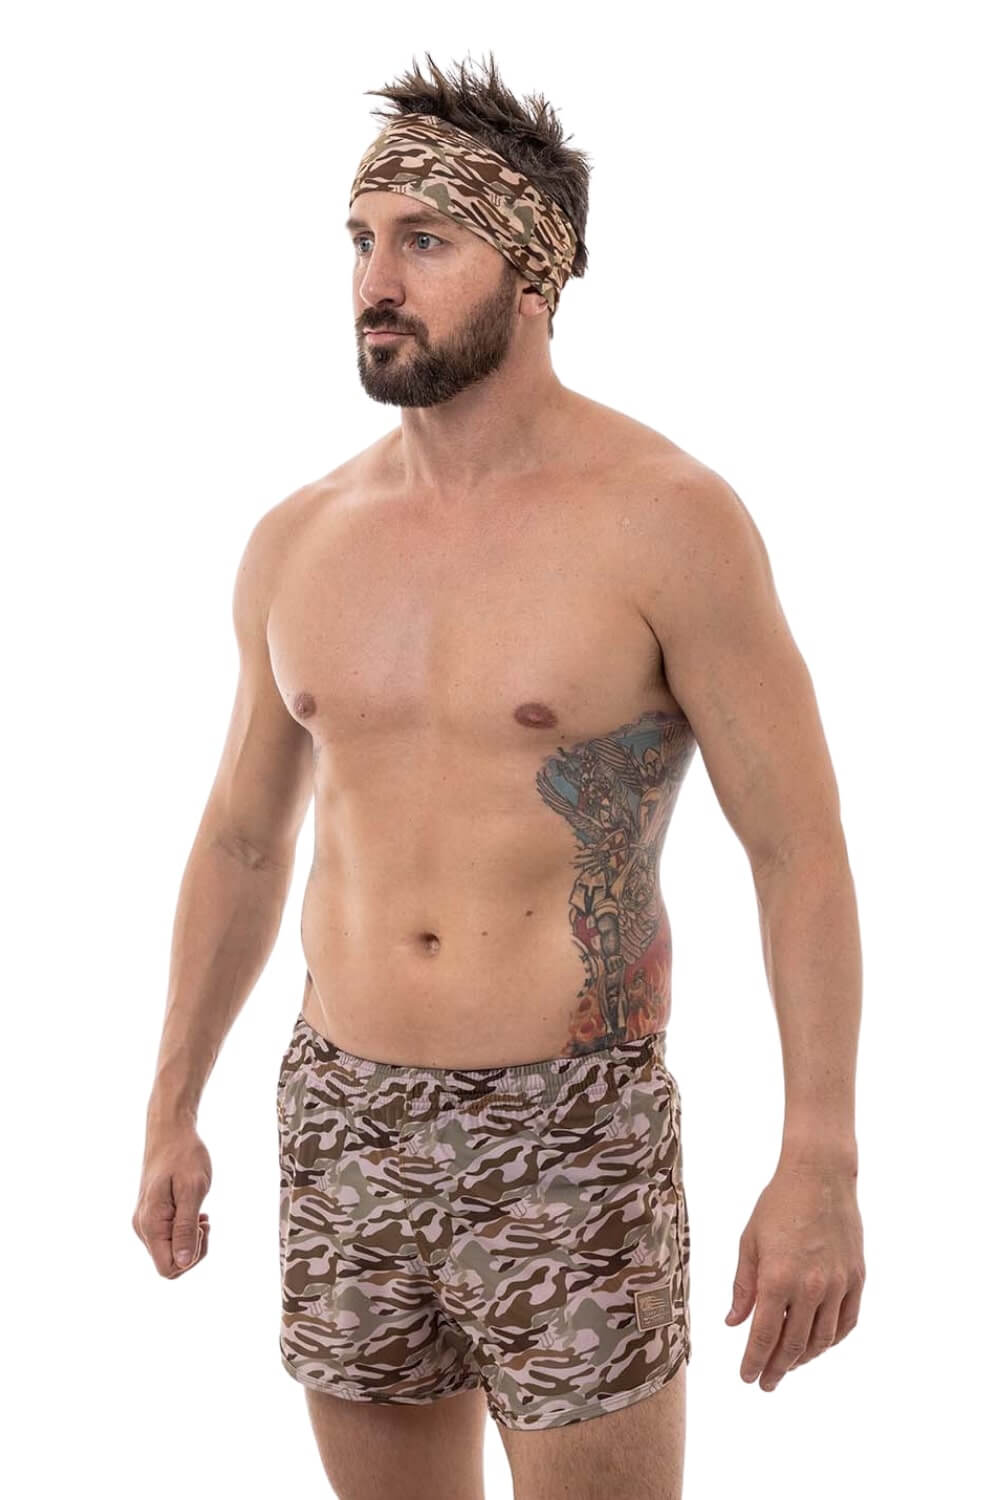 Desert Camo Naked Warrior Camo Ranger Panties Silkies Shorts | Sunga Life